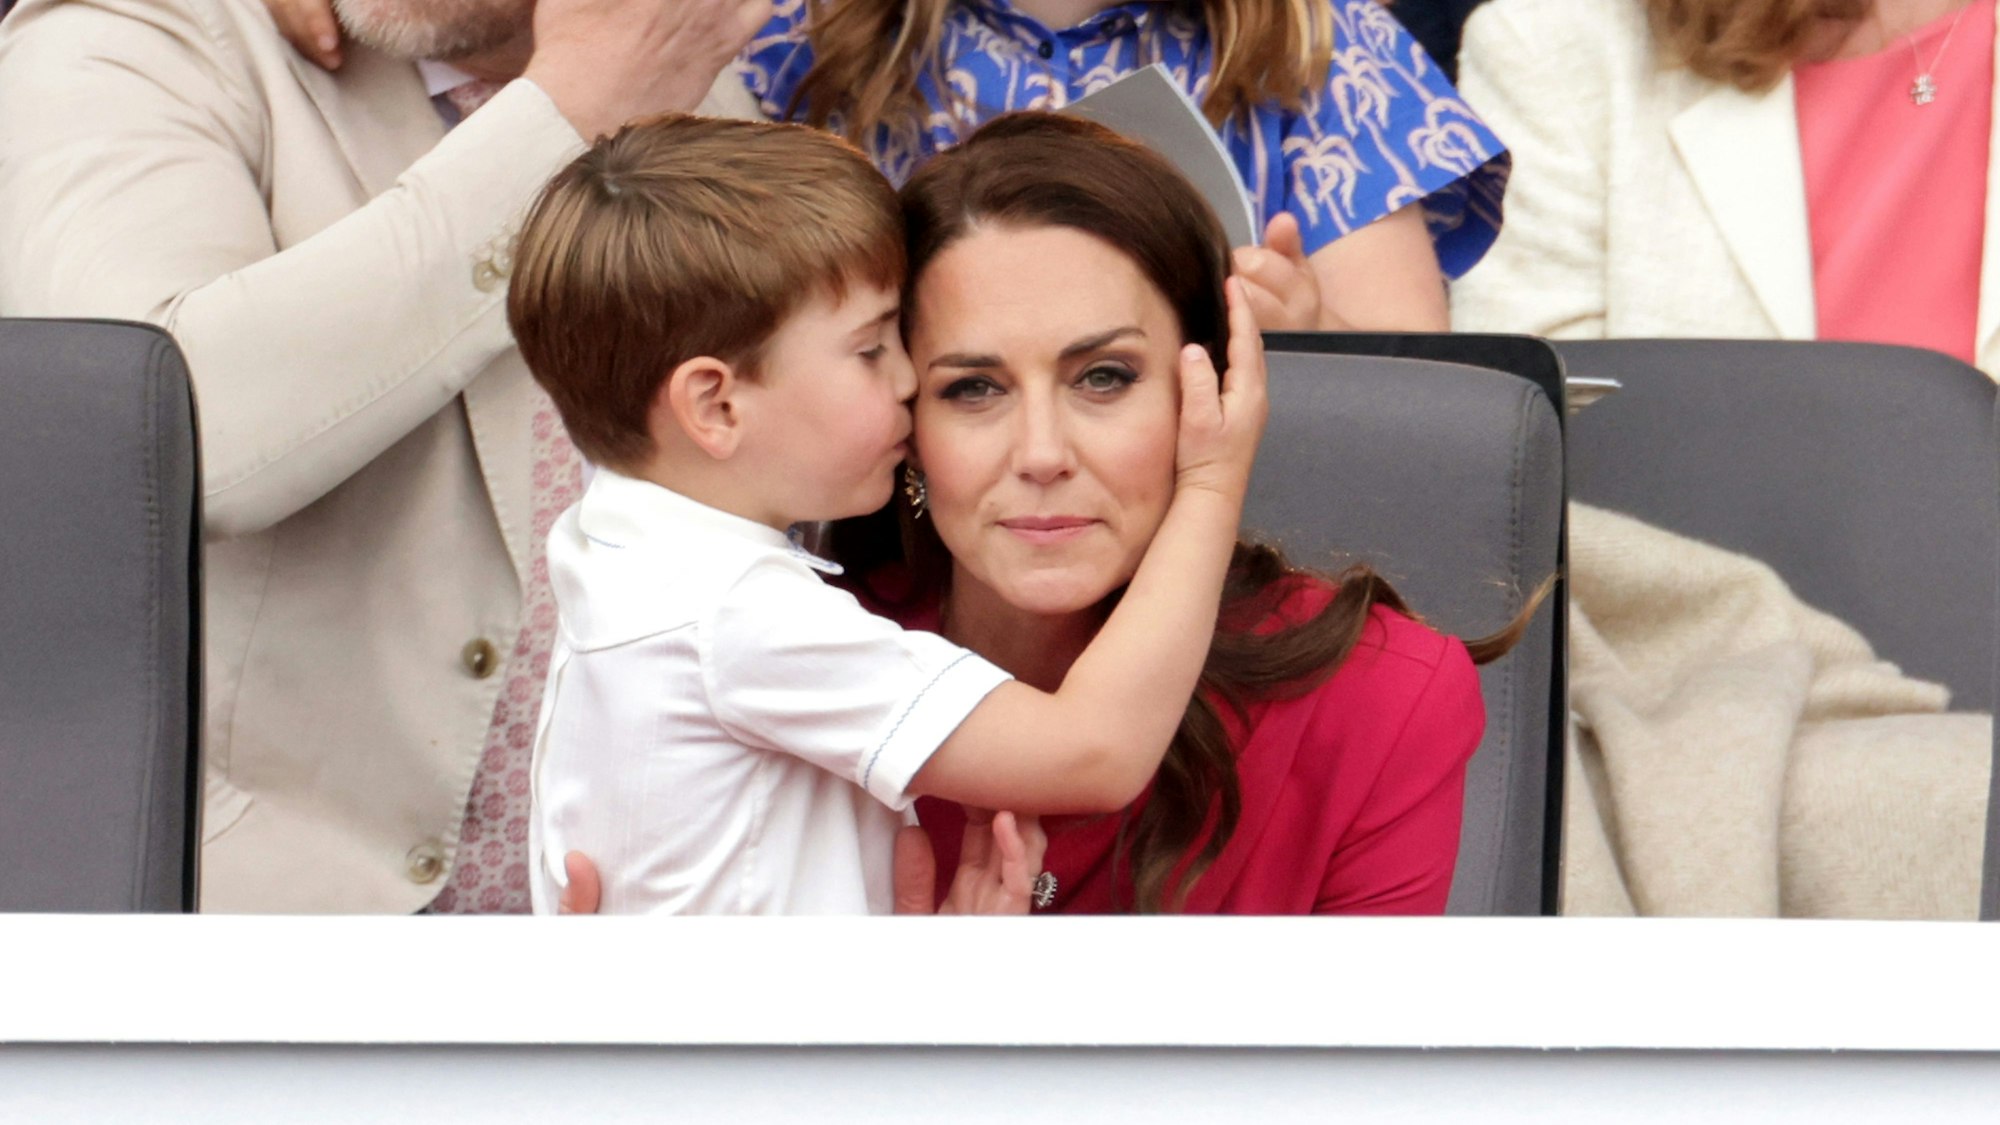 Kate, damalige Herzogin von Cambridge, umarmt Prinz Louis während des Festumzuges vor dem Buckingham Palace am vierten Tag der Feierlichkeiten zum Platinjubiläum der Queen.